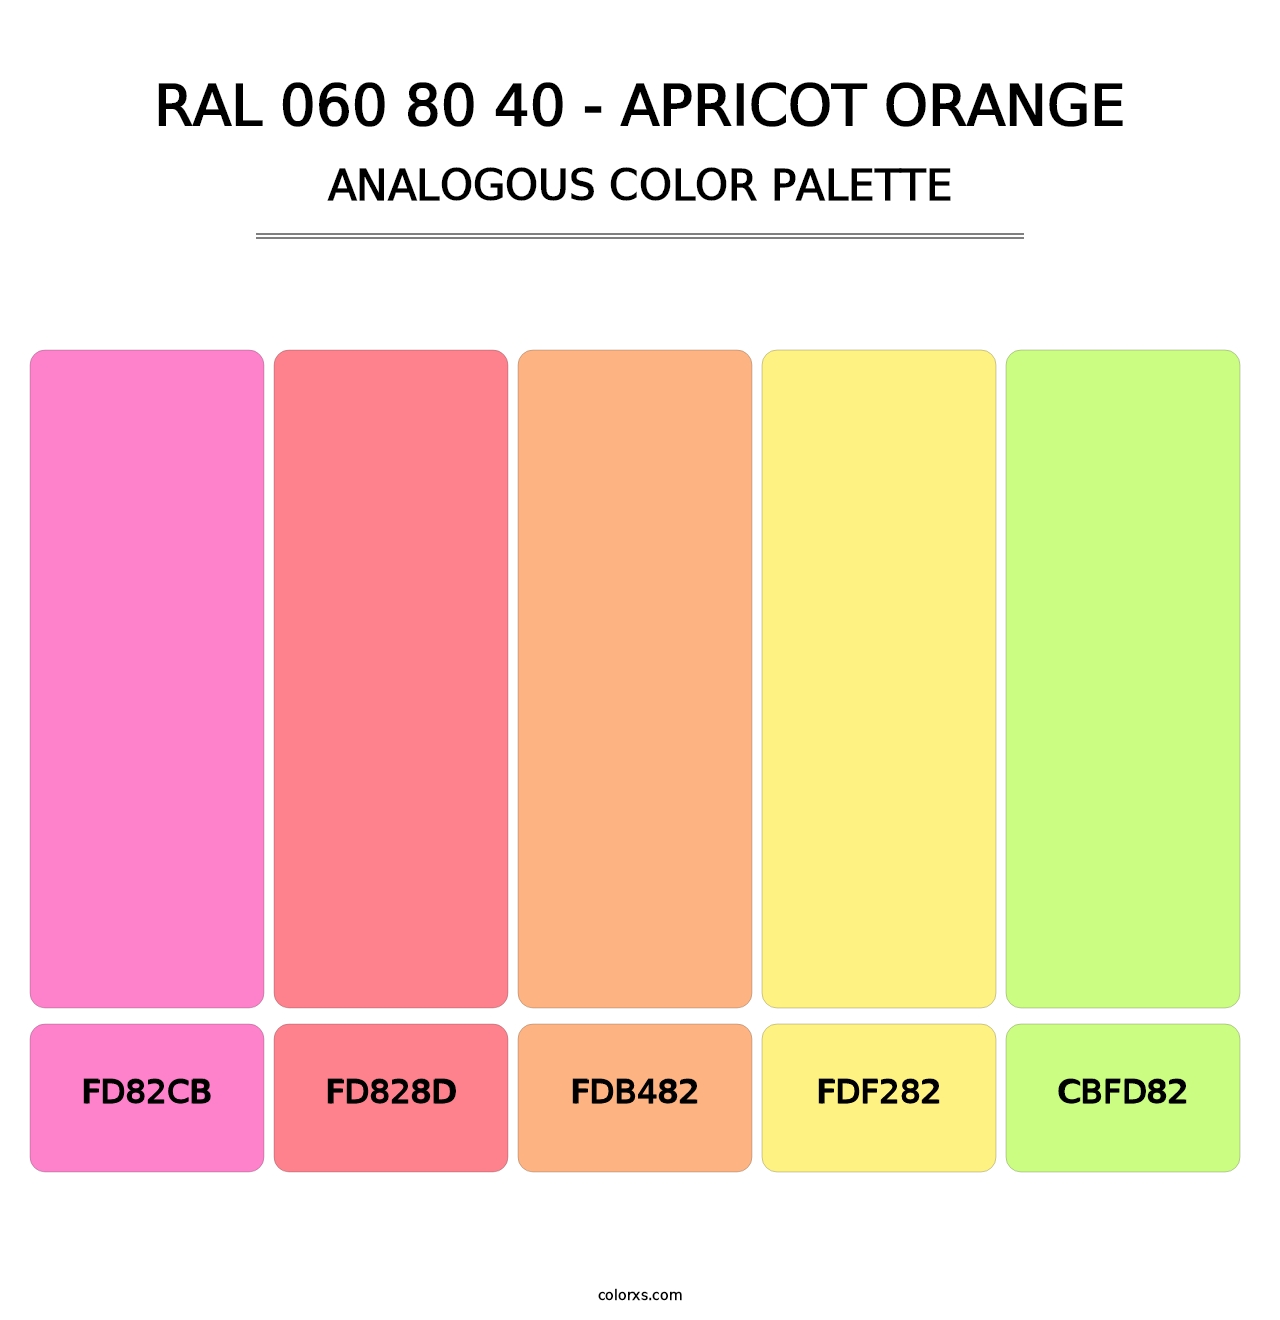 RAL 060 80 40 - Apricot Orange - Analogous Color Palette